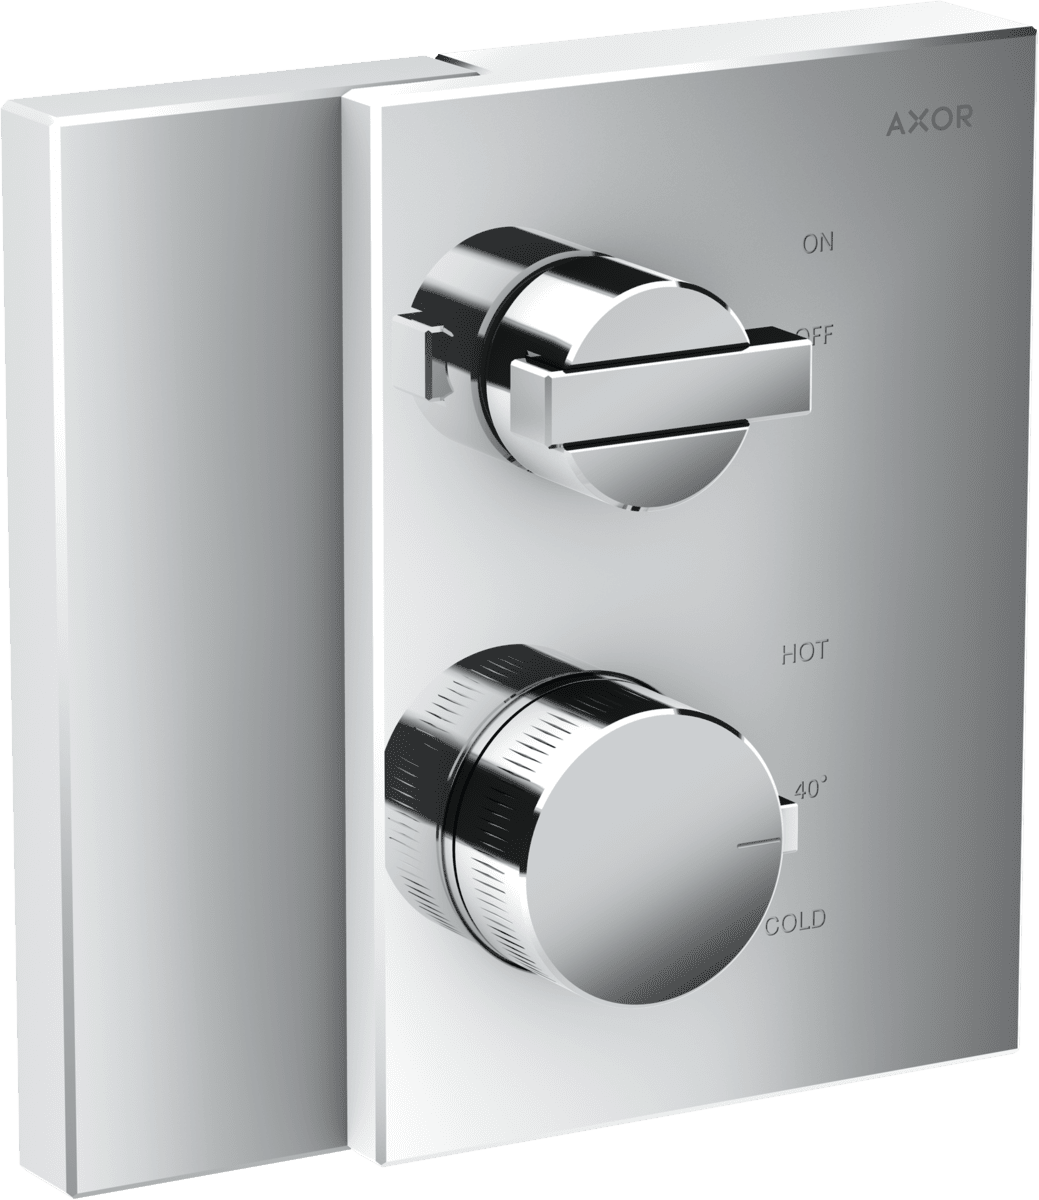 εικόνα του HANSGROHE AXOR Edge Thermostat for concealed installation with shut-off valve #46750000 - Chrome